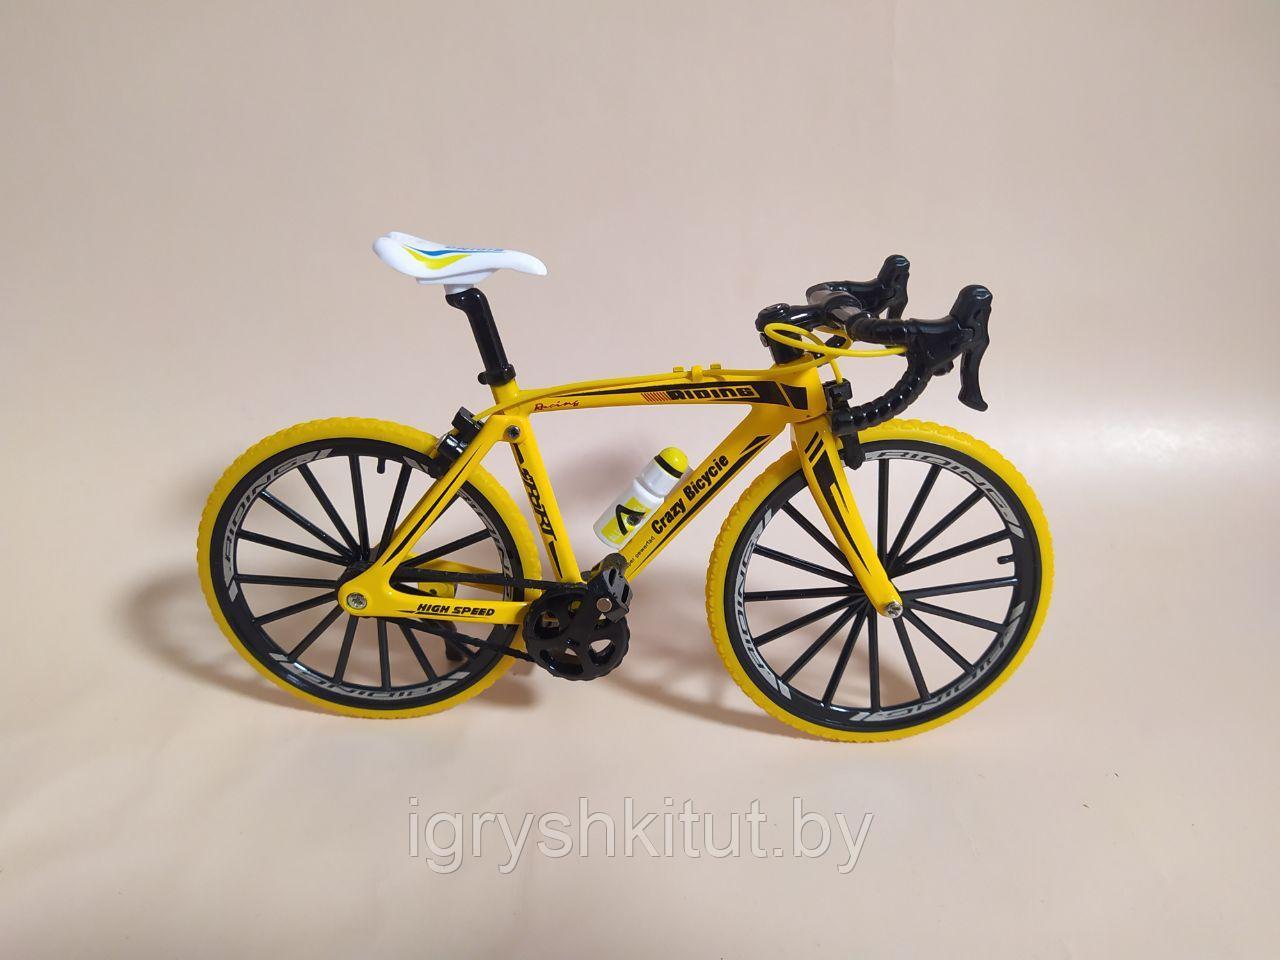 Металлическая модель Велосипед, 2 цвета